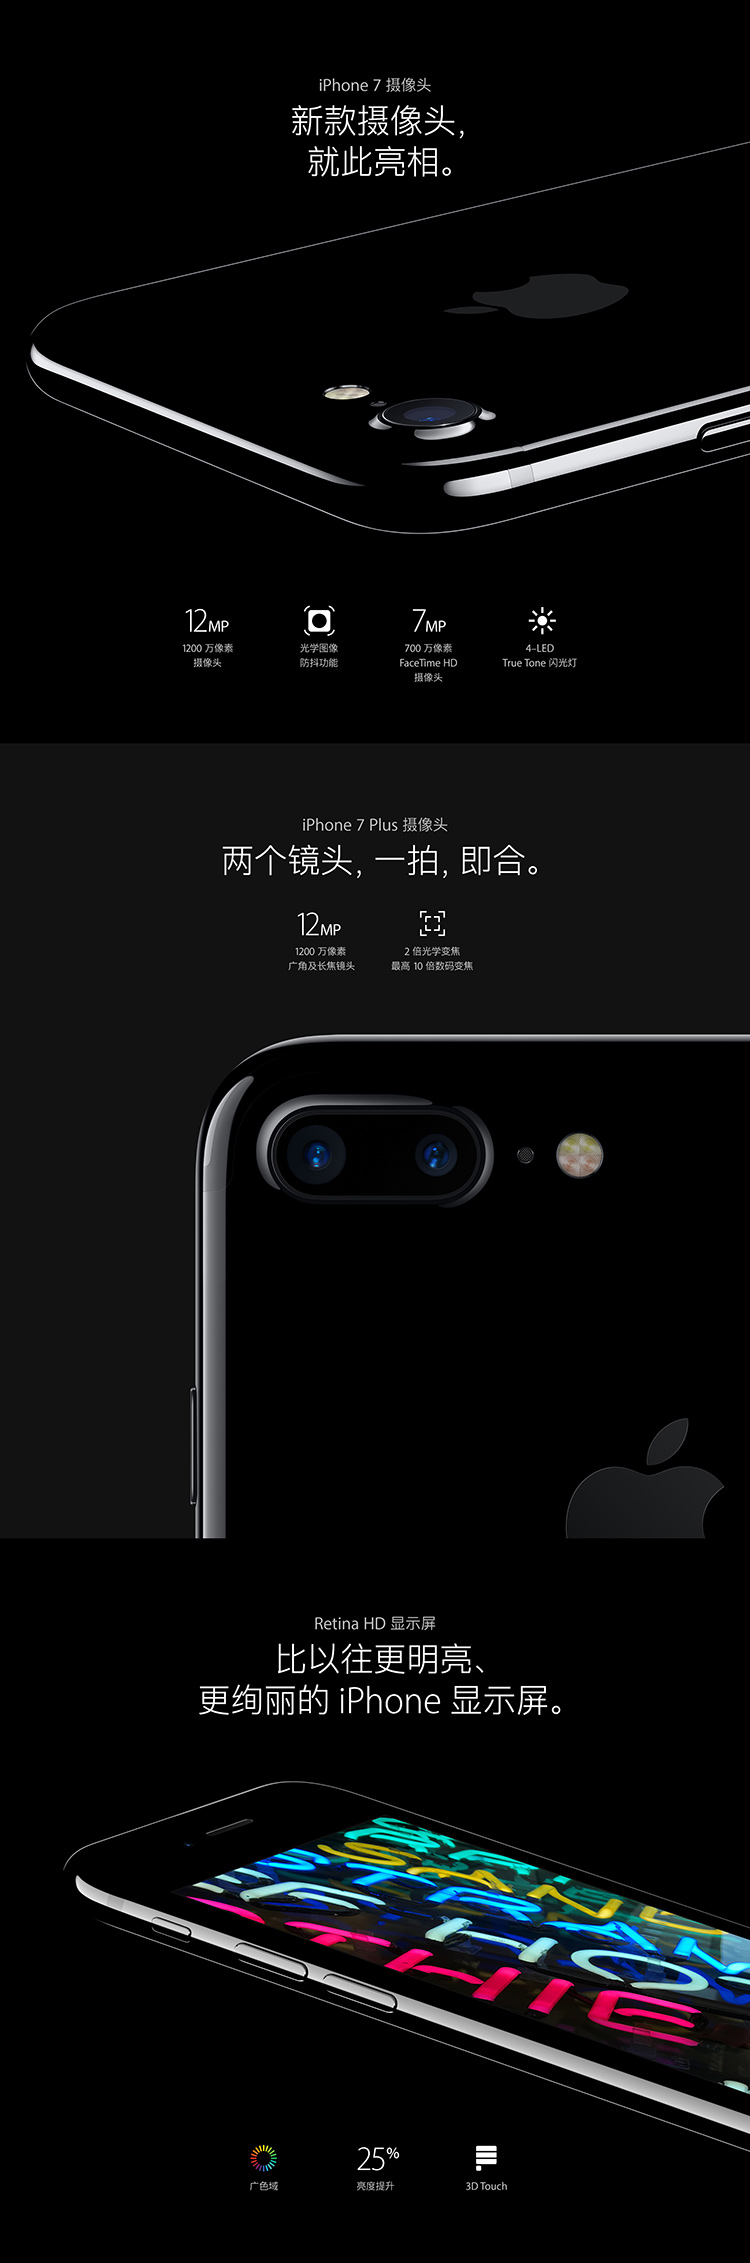 Apple iPhone 7 Plus 128GB 玫瑰金色 移动联通电信4G手机